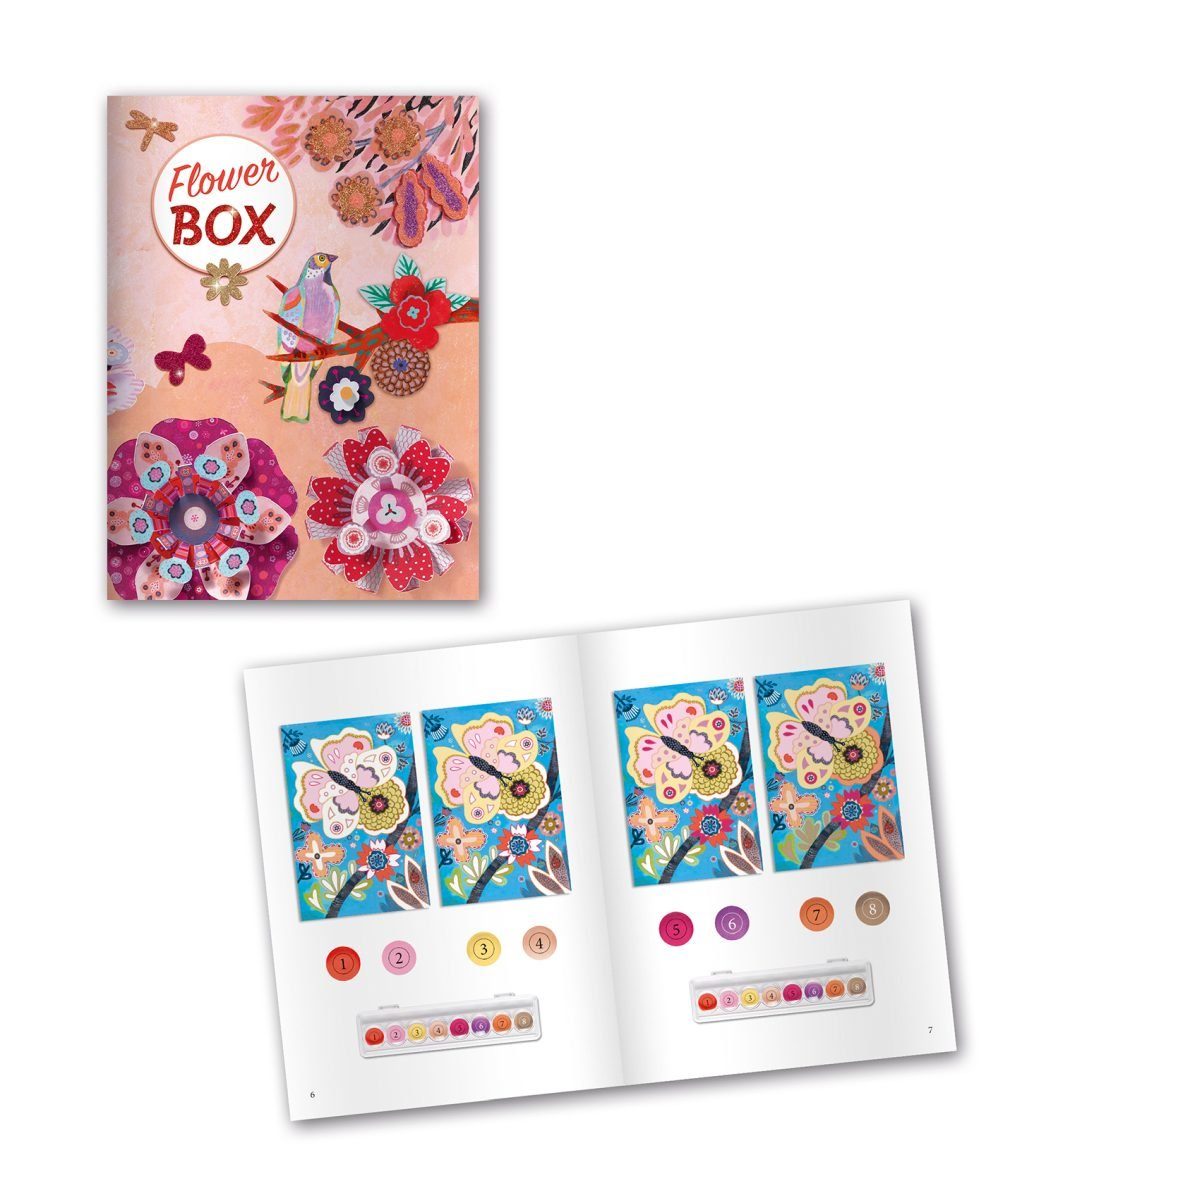 mit Kreativset 6 Aktivitäten Multi-Activity Kinder Kit für Blumengarten DJECO